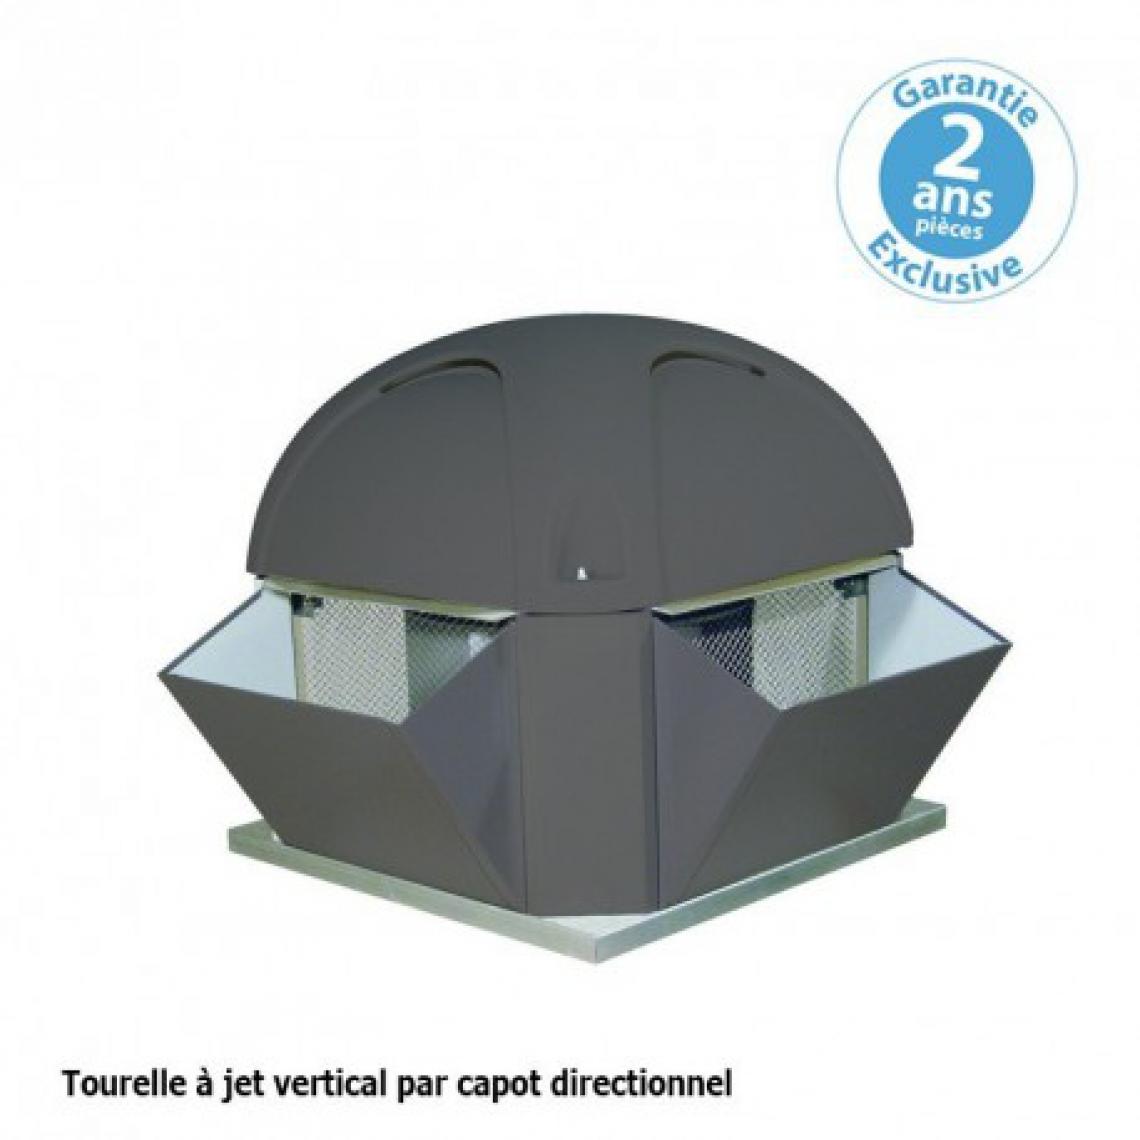 Furnotel - Tourelle 1 vitesse - triphasée - refoulement vertical - 2000 m³ / h sous 170 Pa - - VMC, Ventilation